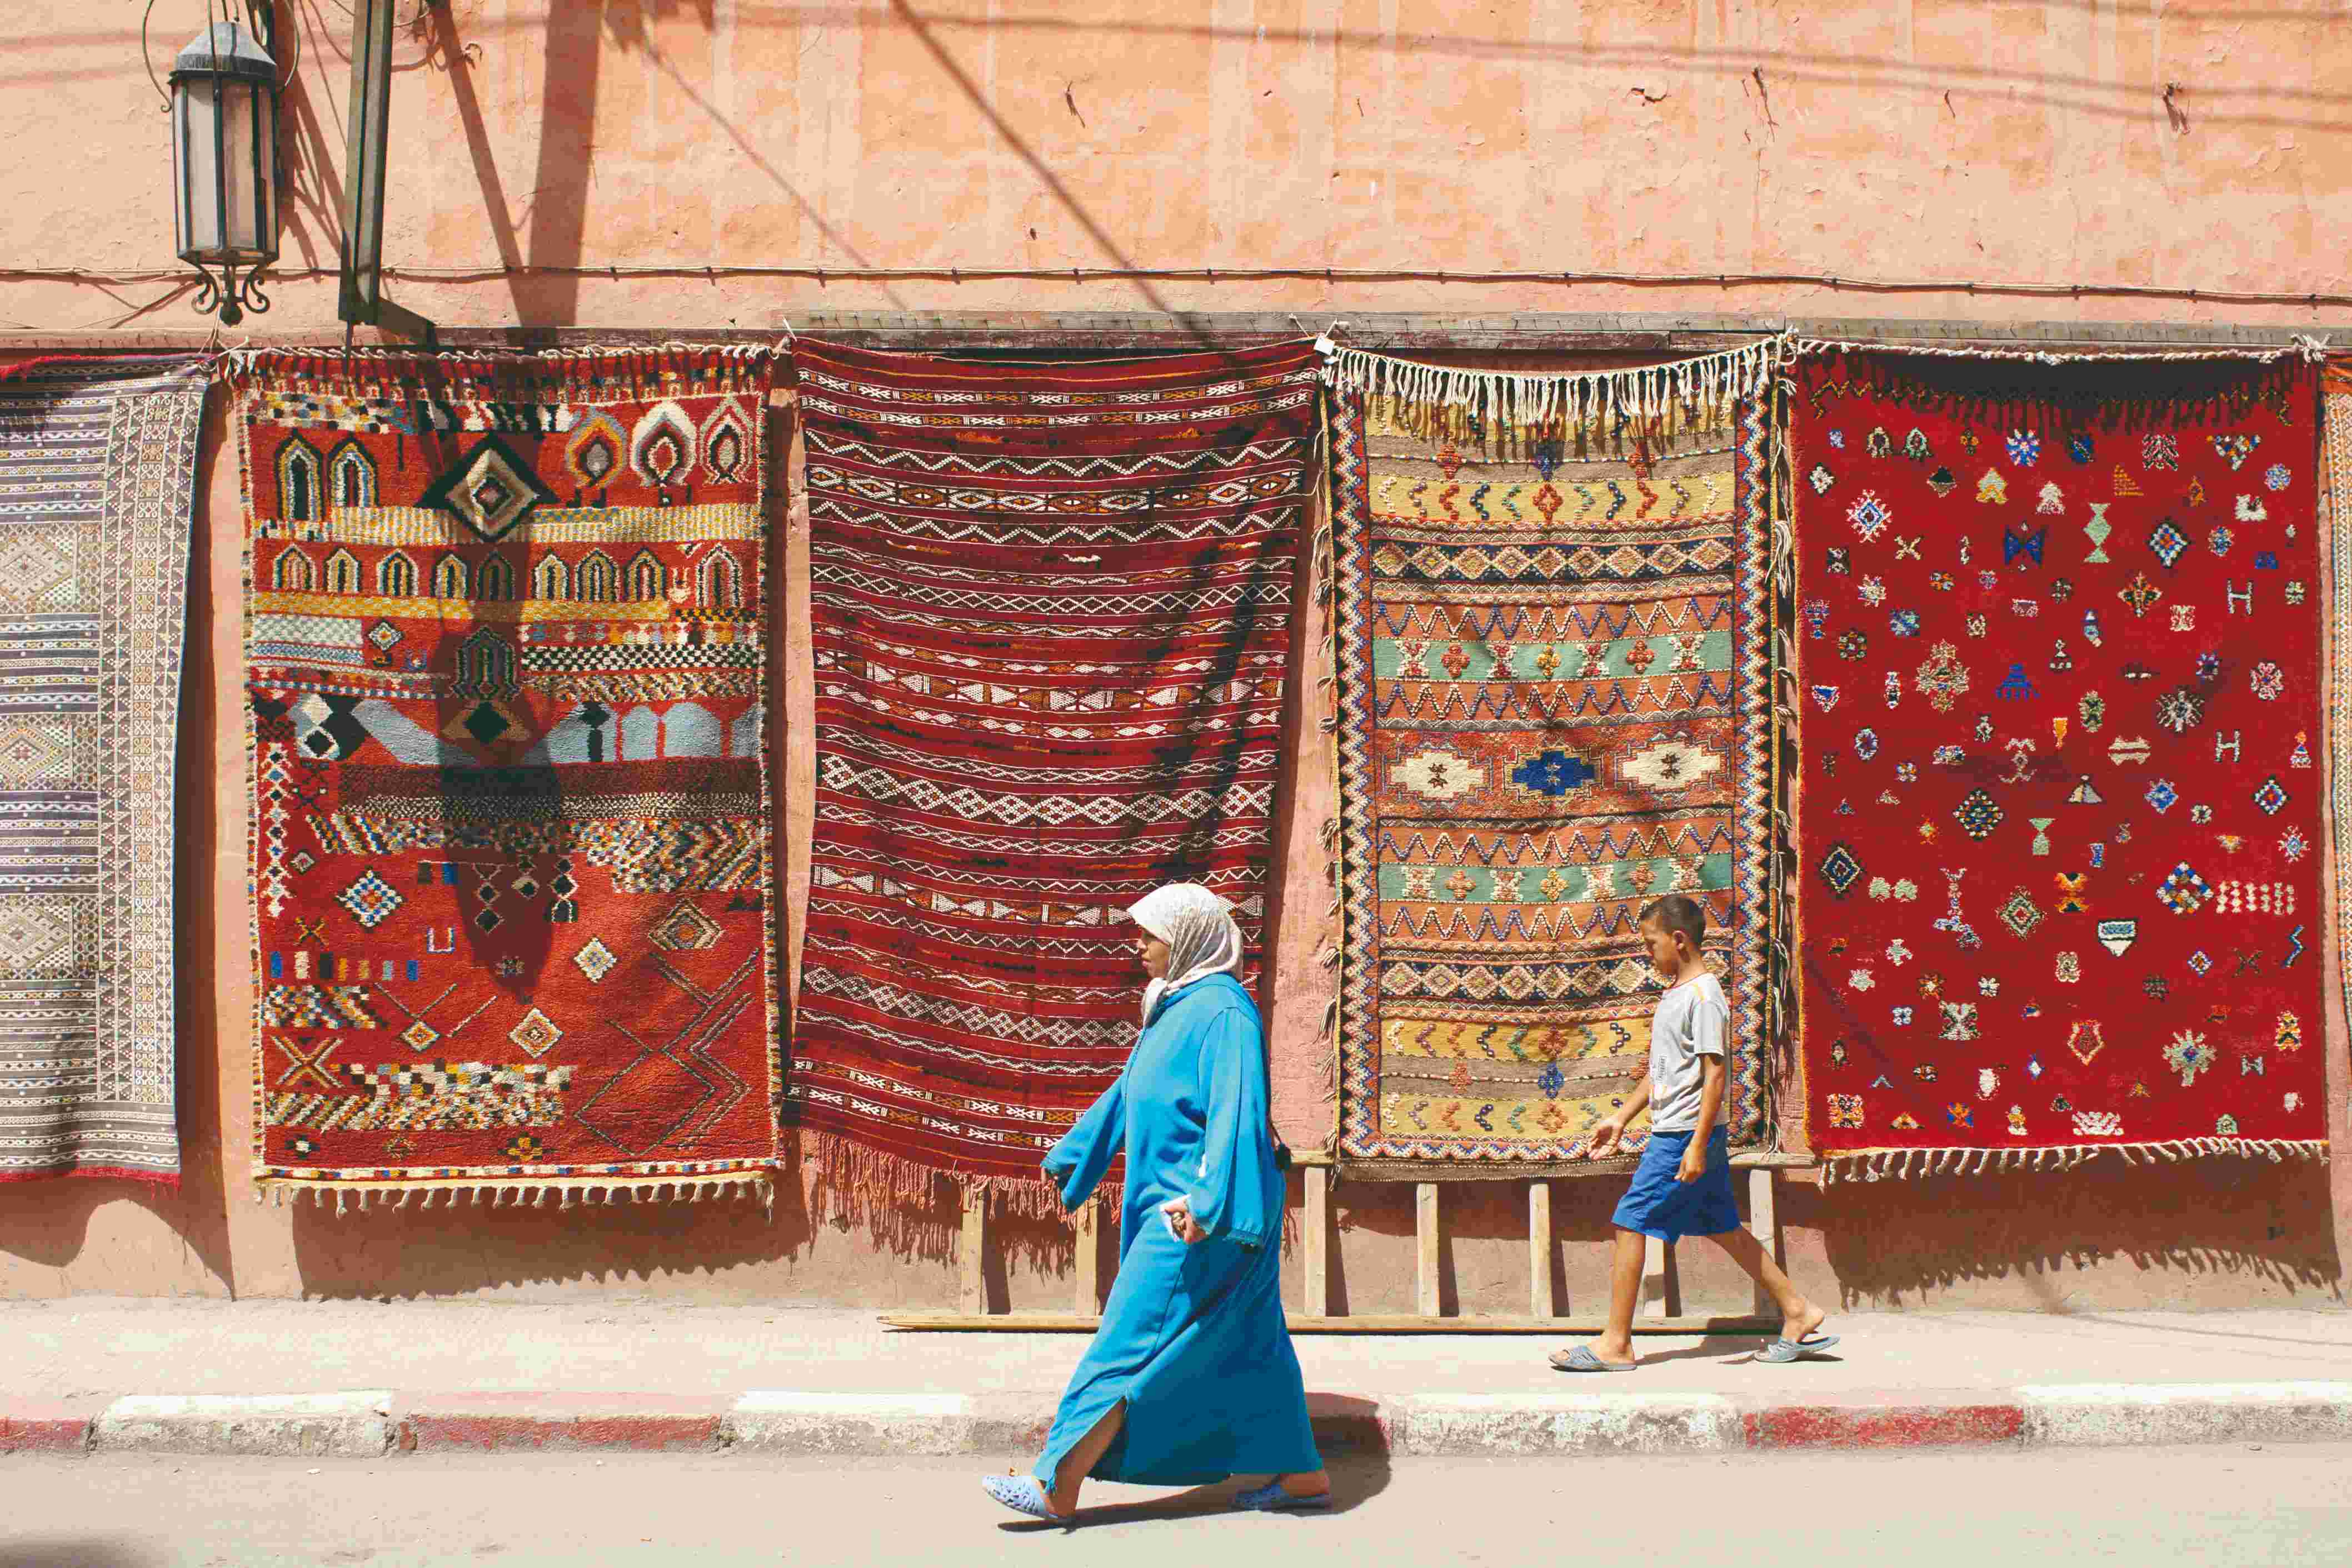 Exposition de tapis dans les rues de Marrakech.